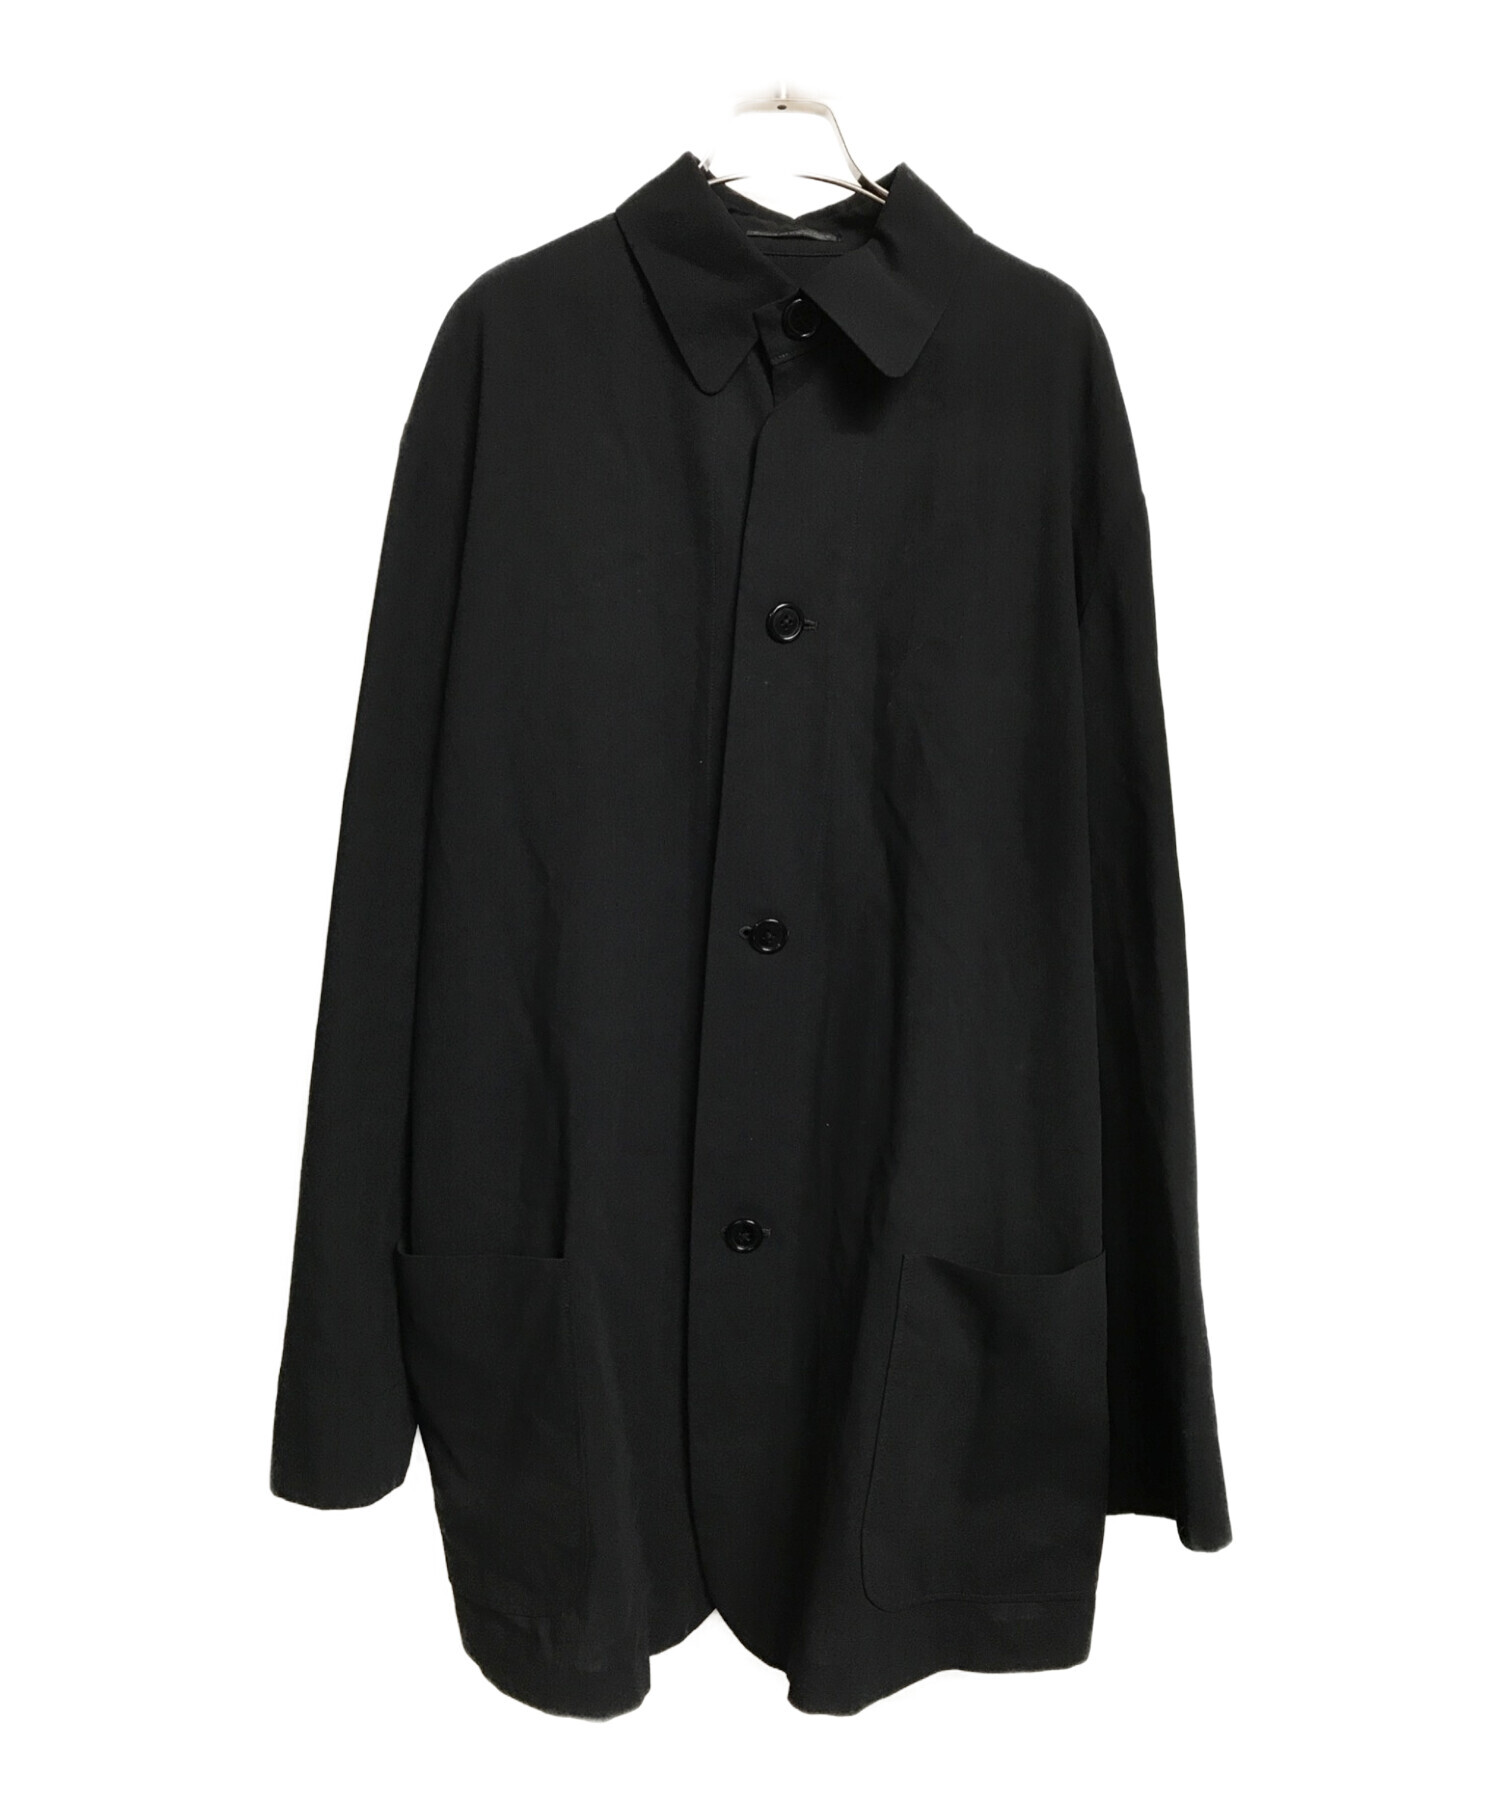 Yohji Yamamoto pour homme (ヨウジヤマモト プールオム) シャツジャケット ブラック サイズ:S